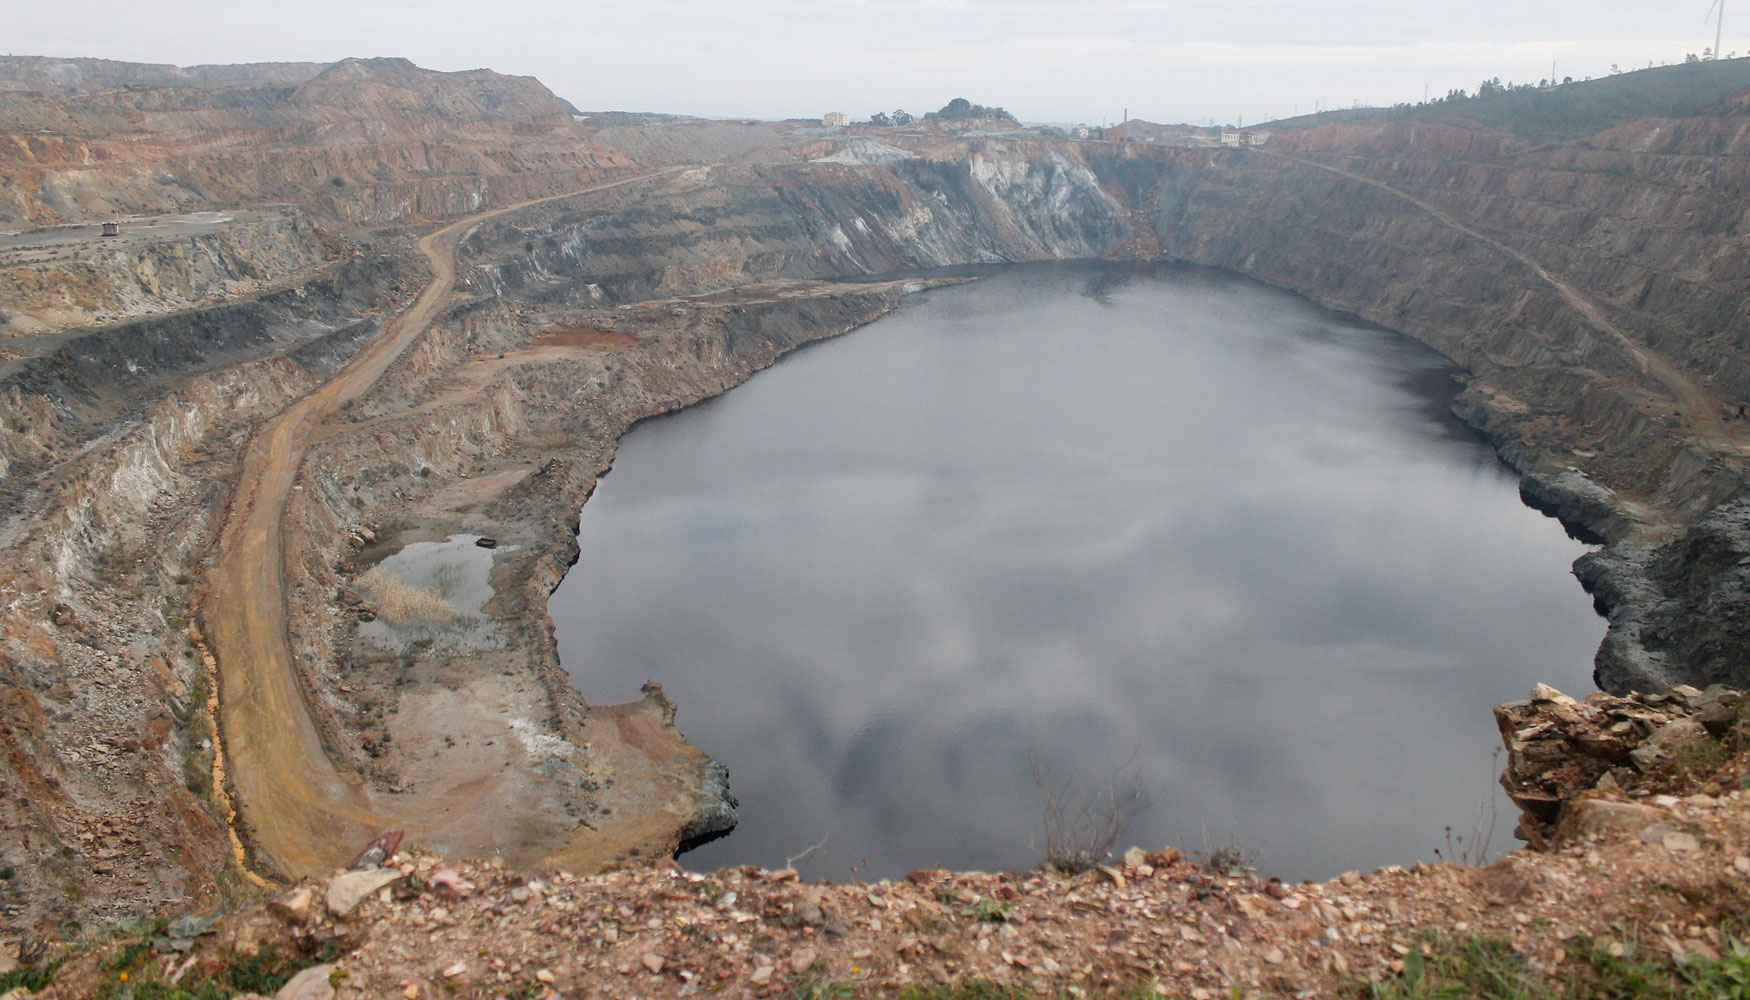 La compaa ha planteado un proyecto para la reactivacin de las minas de Tharsis, La Zarza y San Telmo, situadas en la provincia de Huelva...